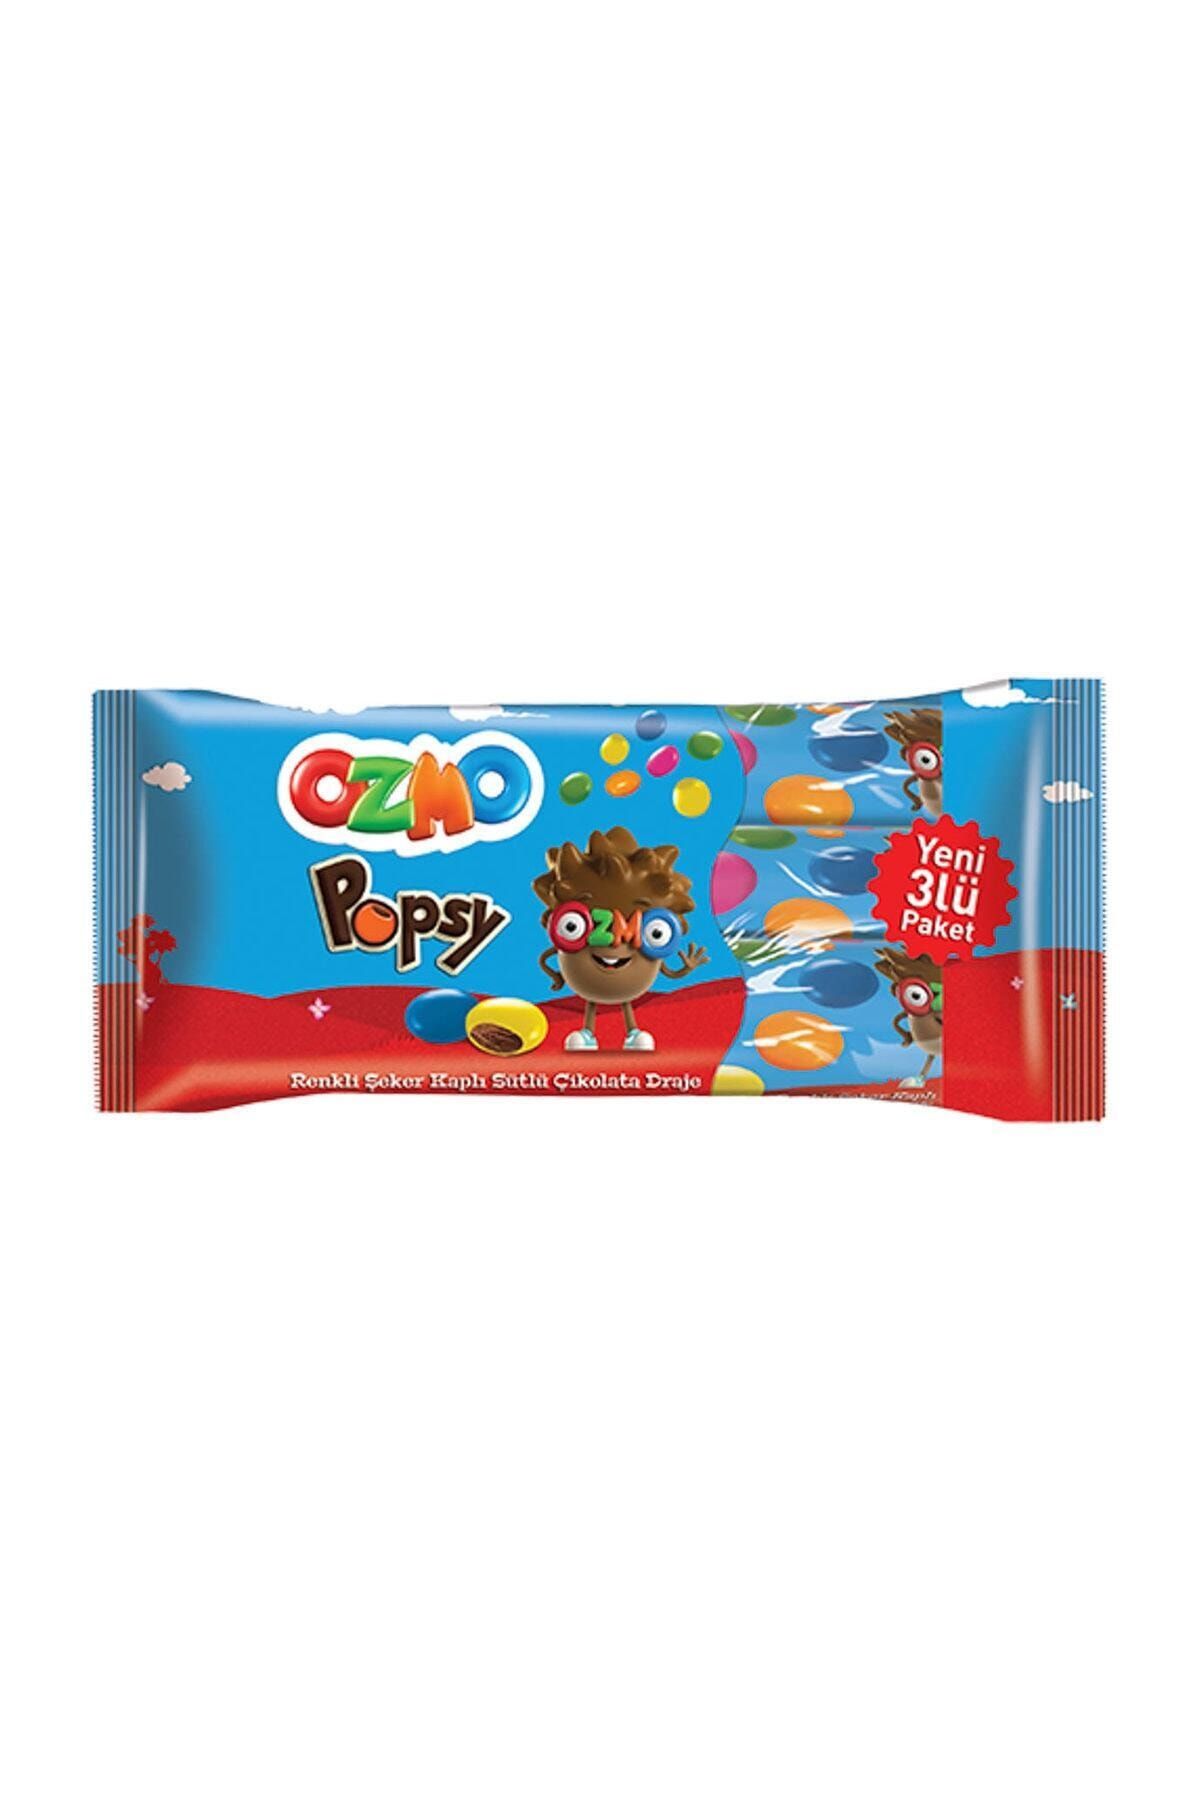 Şölen Ozmo Popsy 3'lü Çikolata